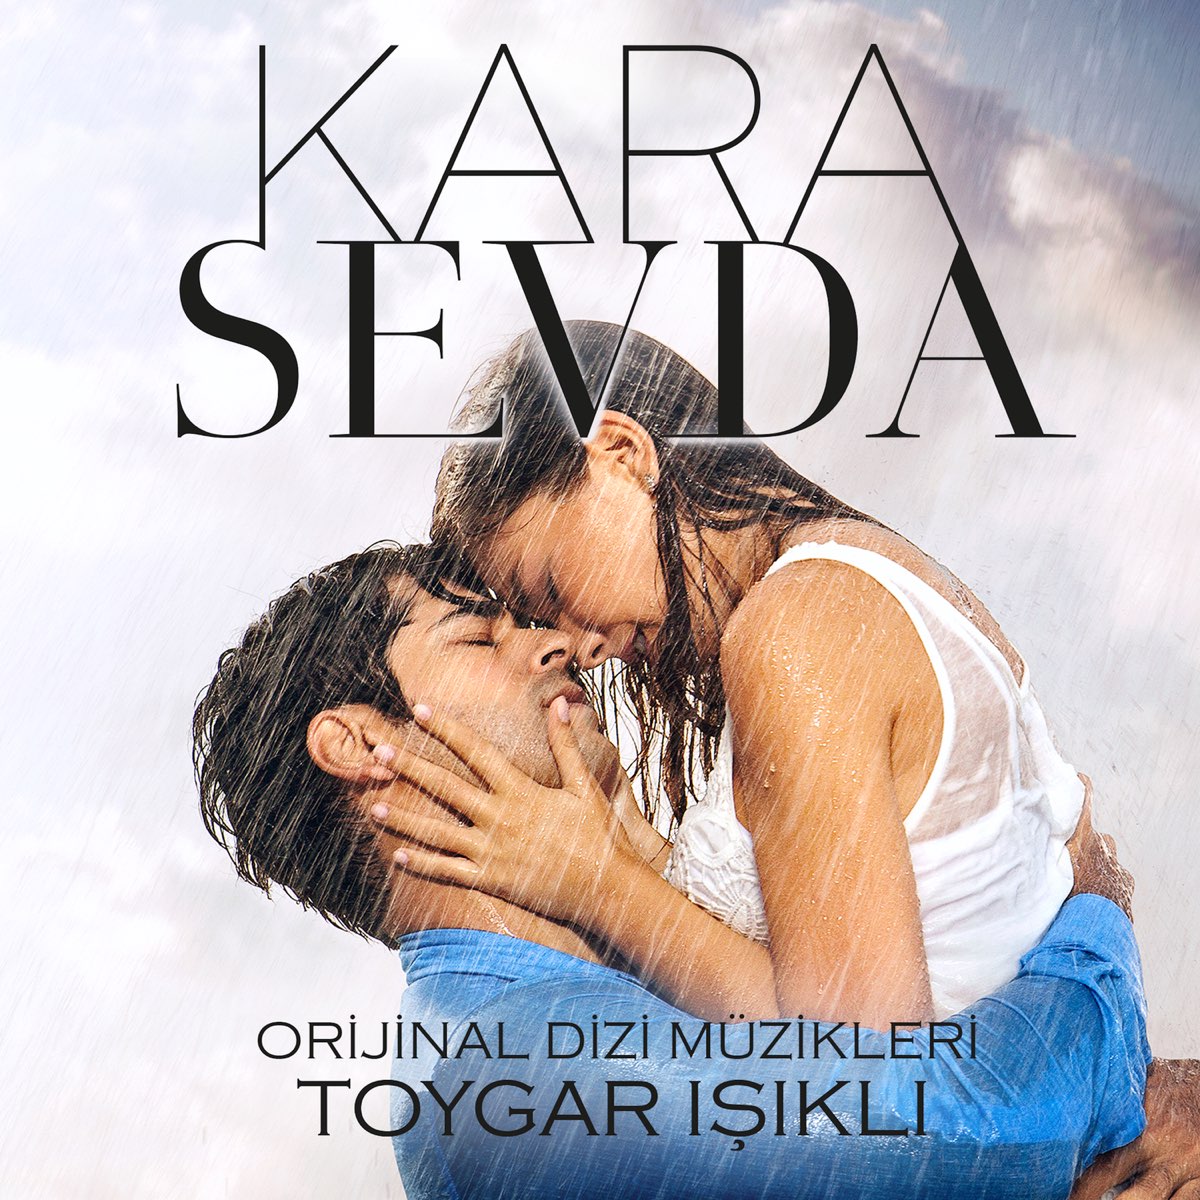 ‎Kara Sevda (Orijinal Dizi Müzikleri) - Album by Toygar Işıklı - Apple Music